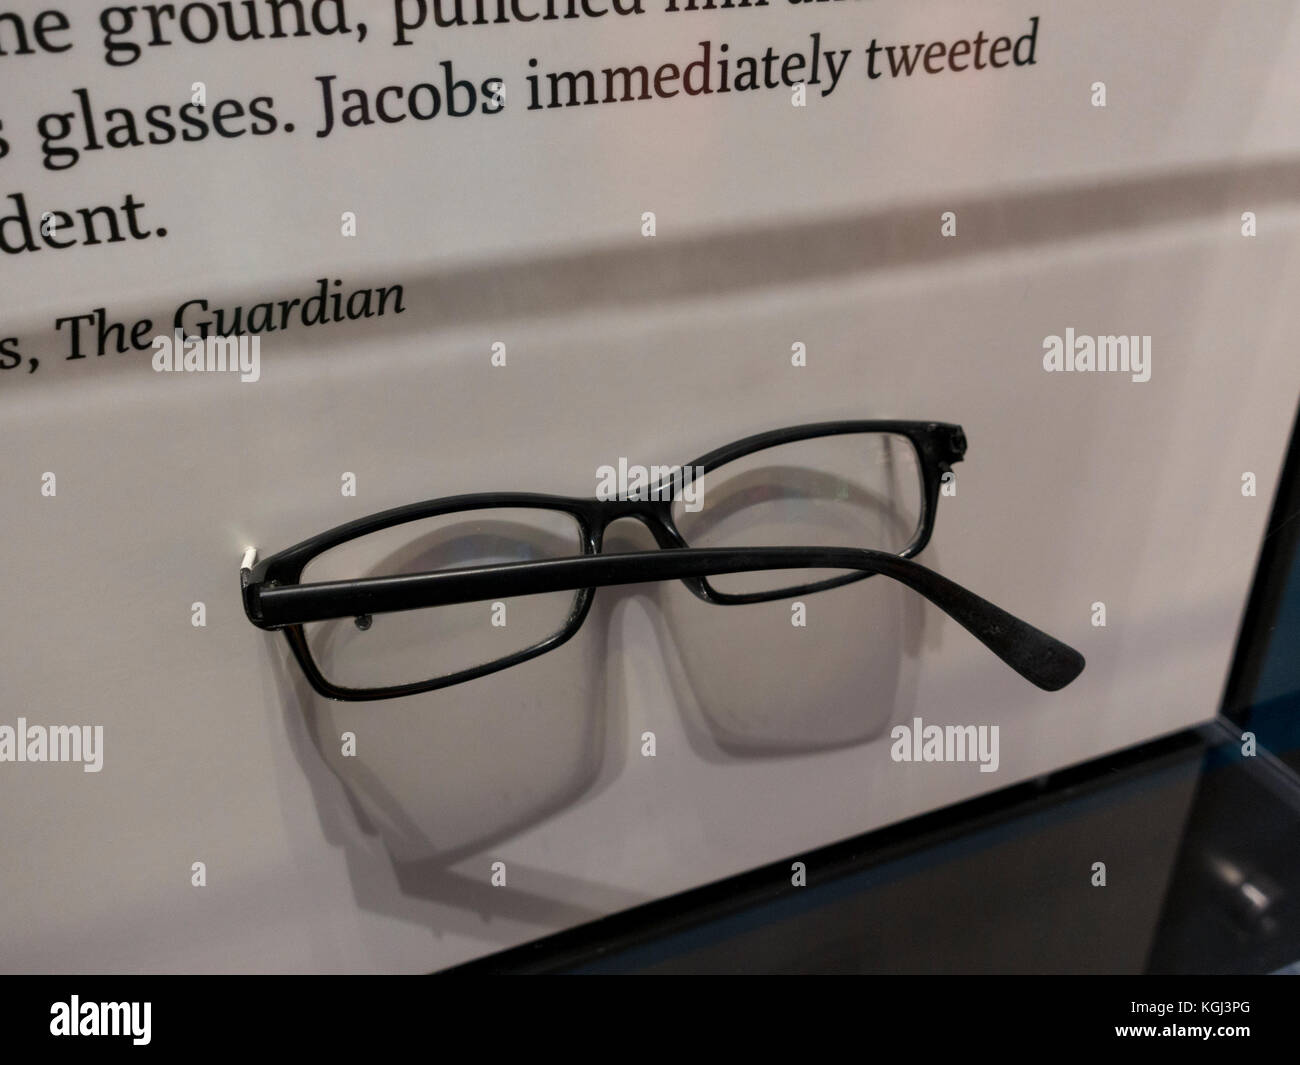 Ben Jacobs zerbrochene Gläser in Newseum, ein interaktives Museum in Washington DC, USA. Stockfoto